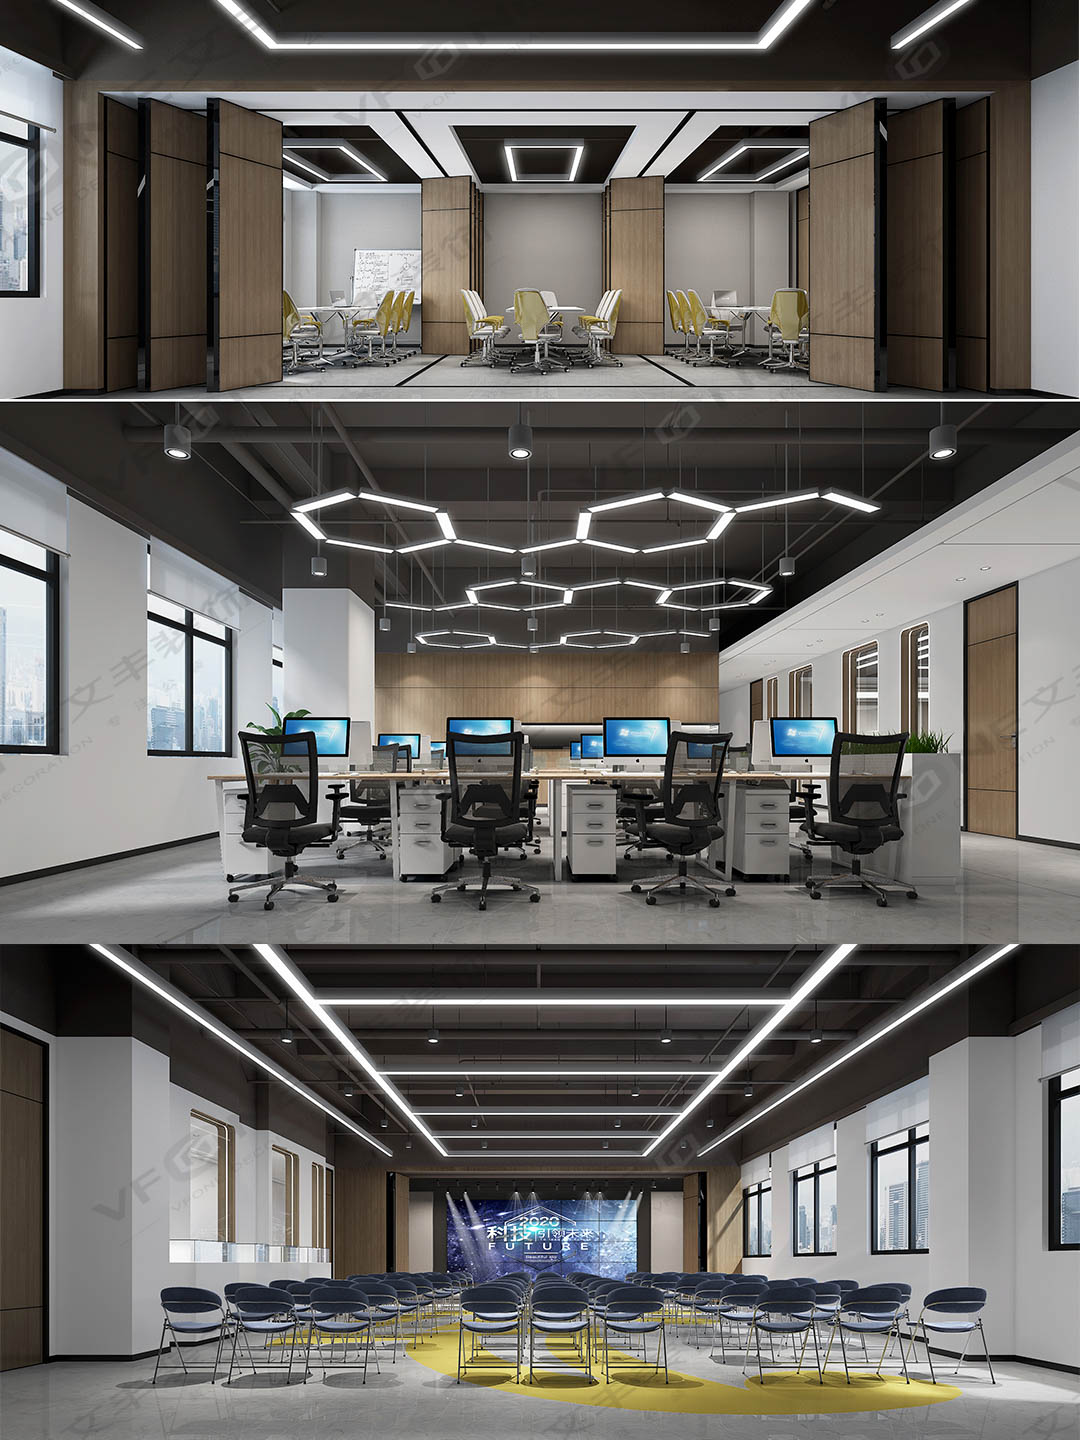 光明辦公室設計裝修_辦公室裝修裝飾_高效有趣的科技辦公室設計案例